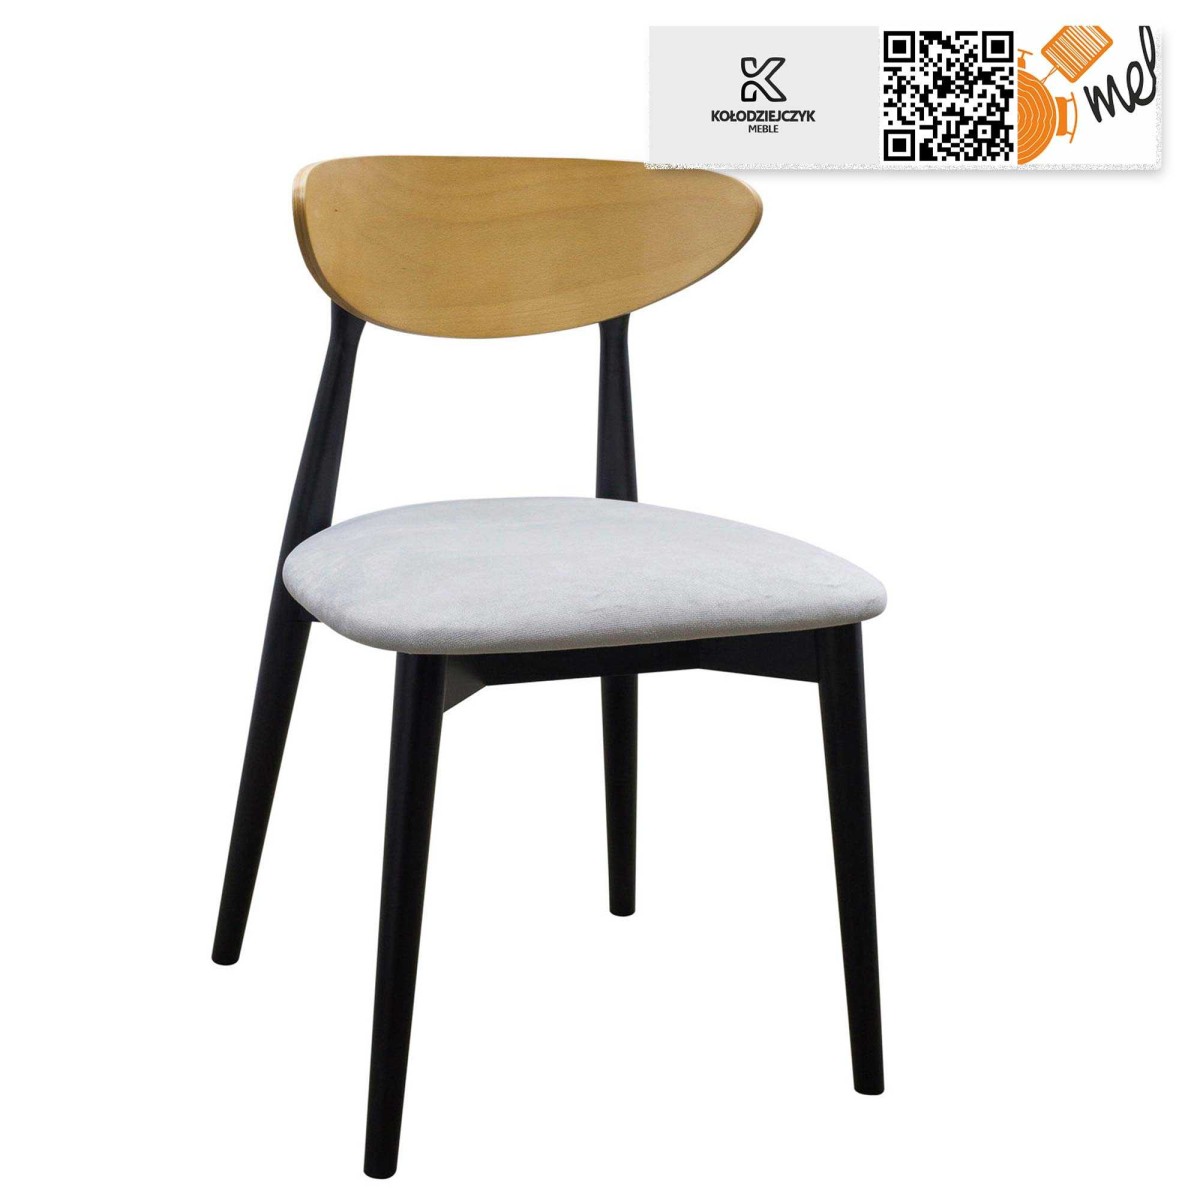 Wyjątkowe czarne krzesło K156 tapicerowane, idealne do kuchni, jadalni lub salonu w stylu skandynawskim.